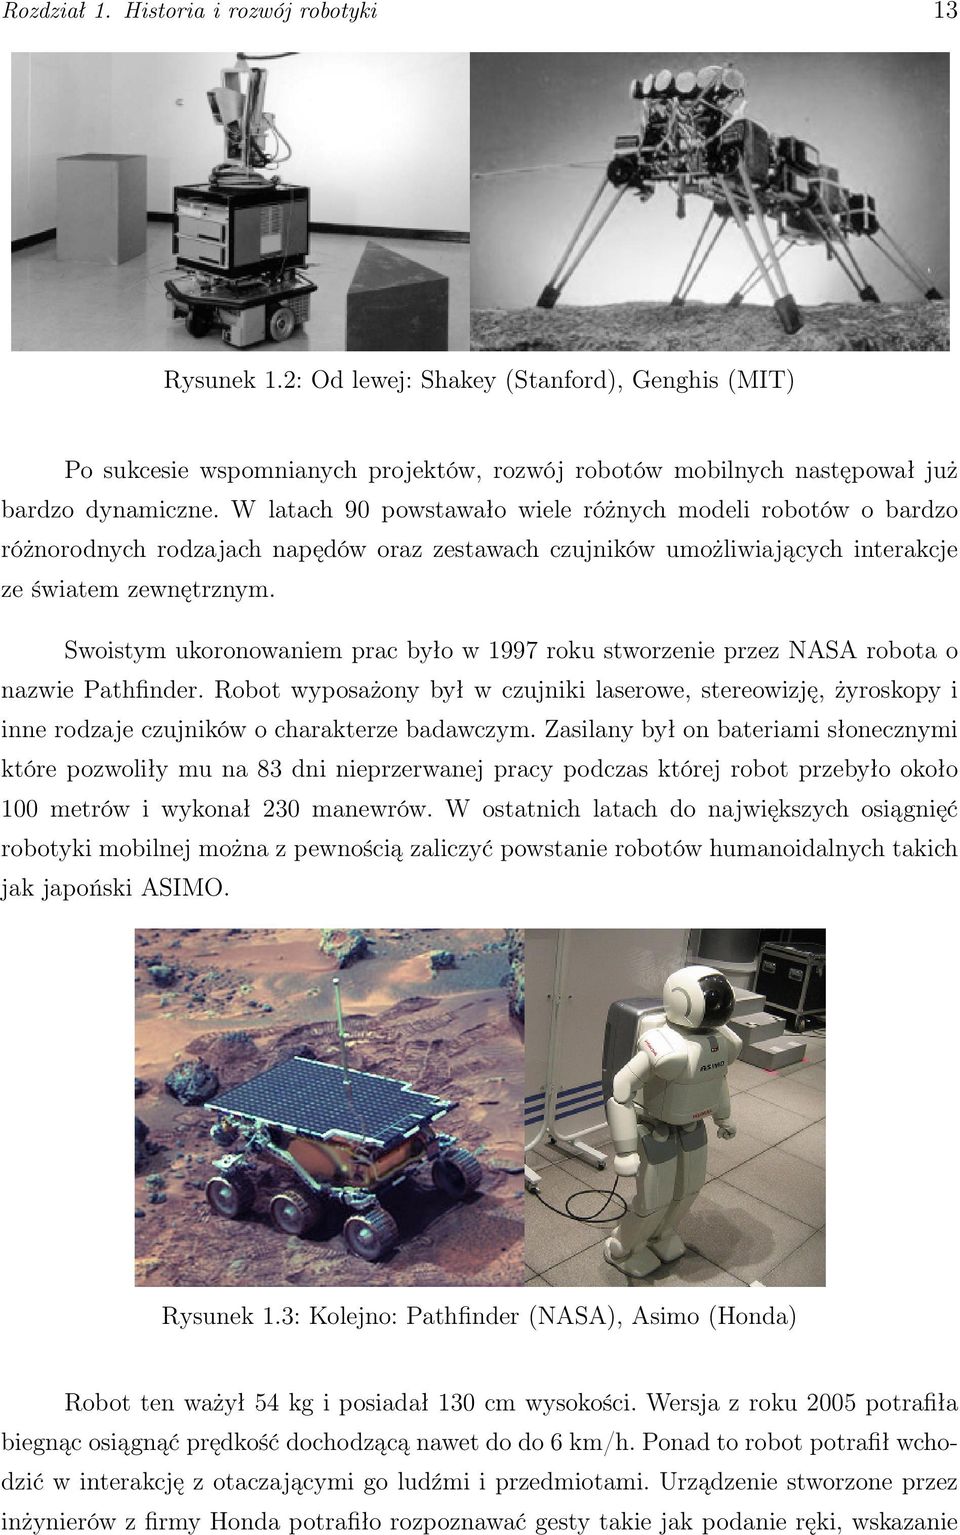 Swoistym ukoronowaniem prac było w 1997 roku stworzenie przez NASA robota o nazwie Pathfinder.